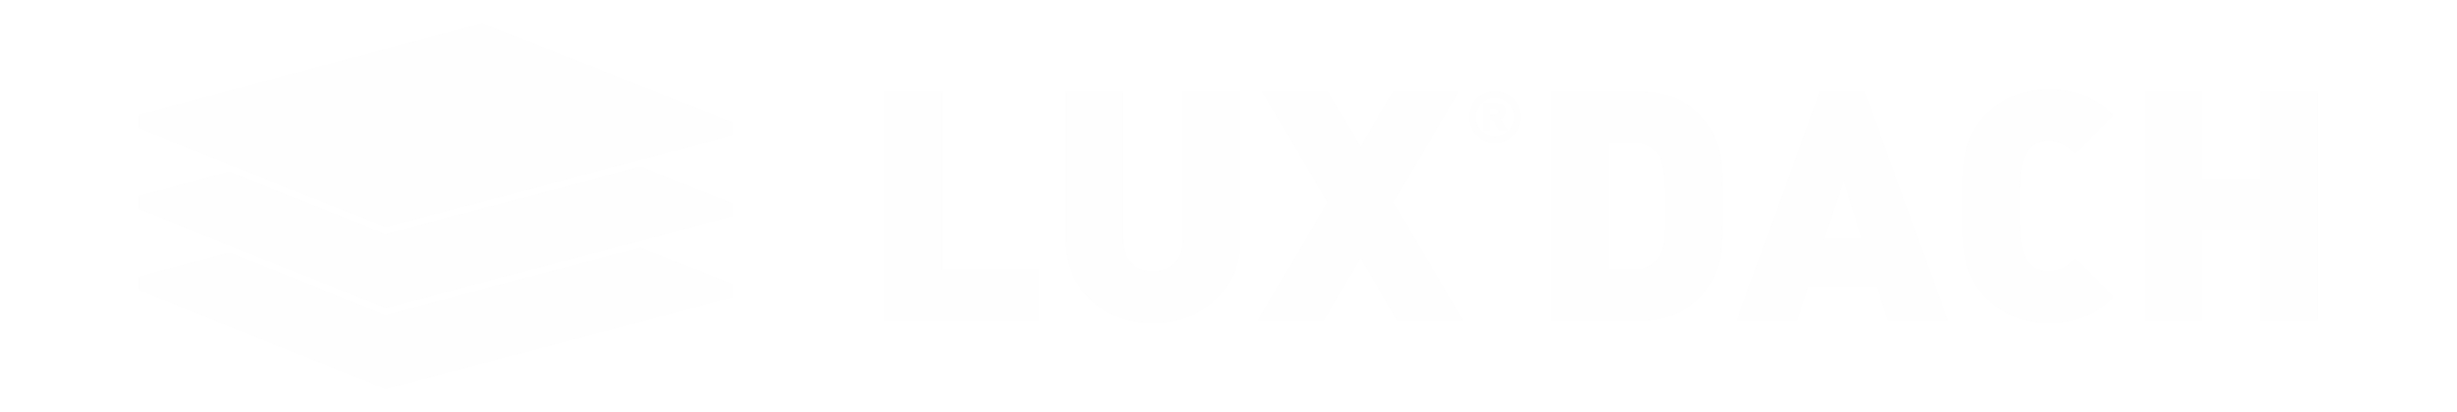 Lux Dach Logo